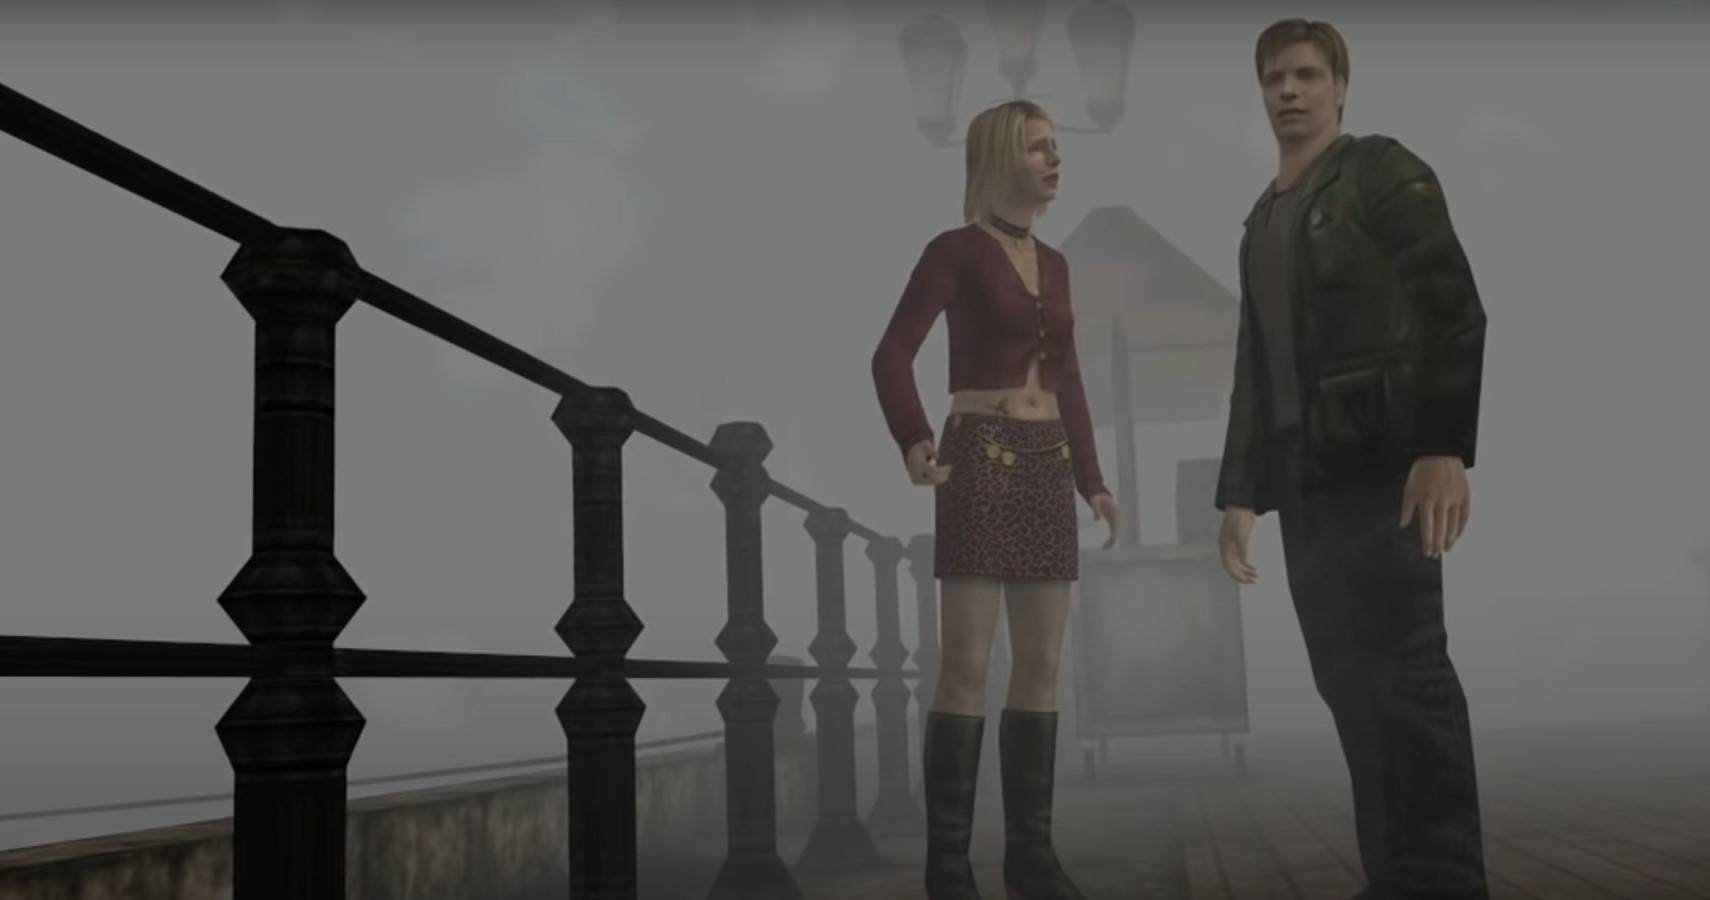  Silent Hill 2 Charaktere